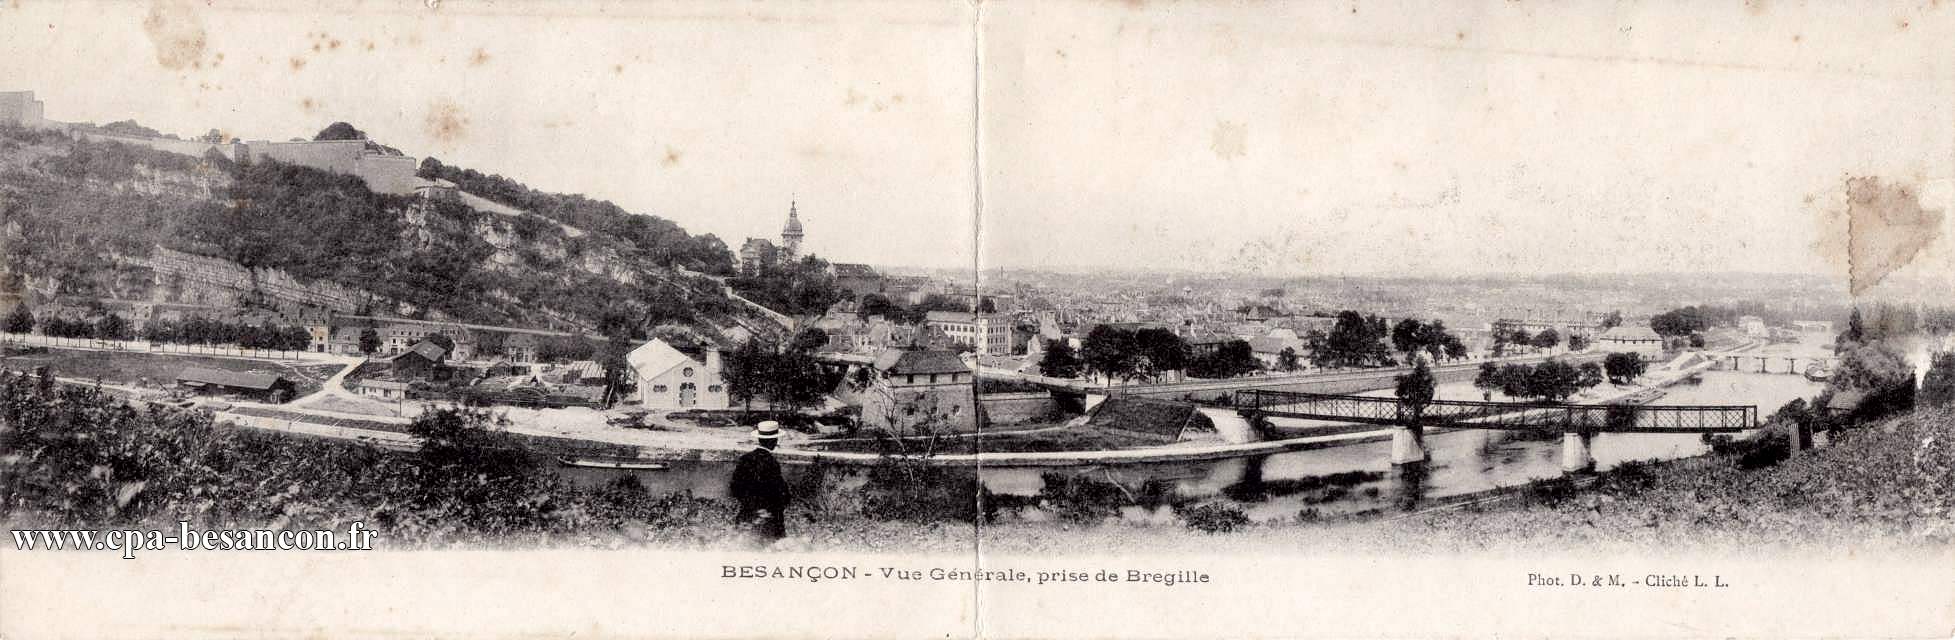 BESANÇON - Vue Générale, prise de Bregille